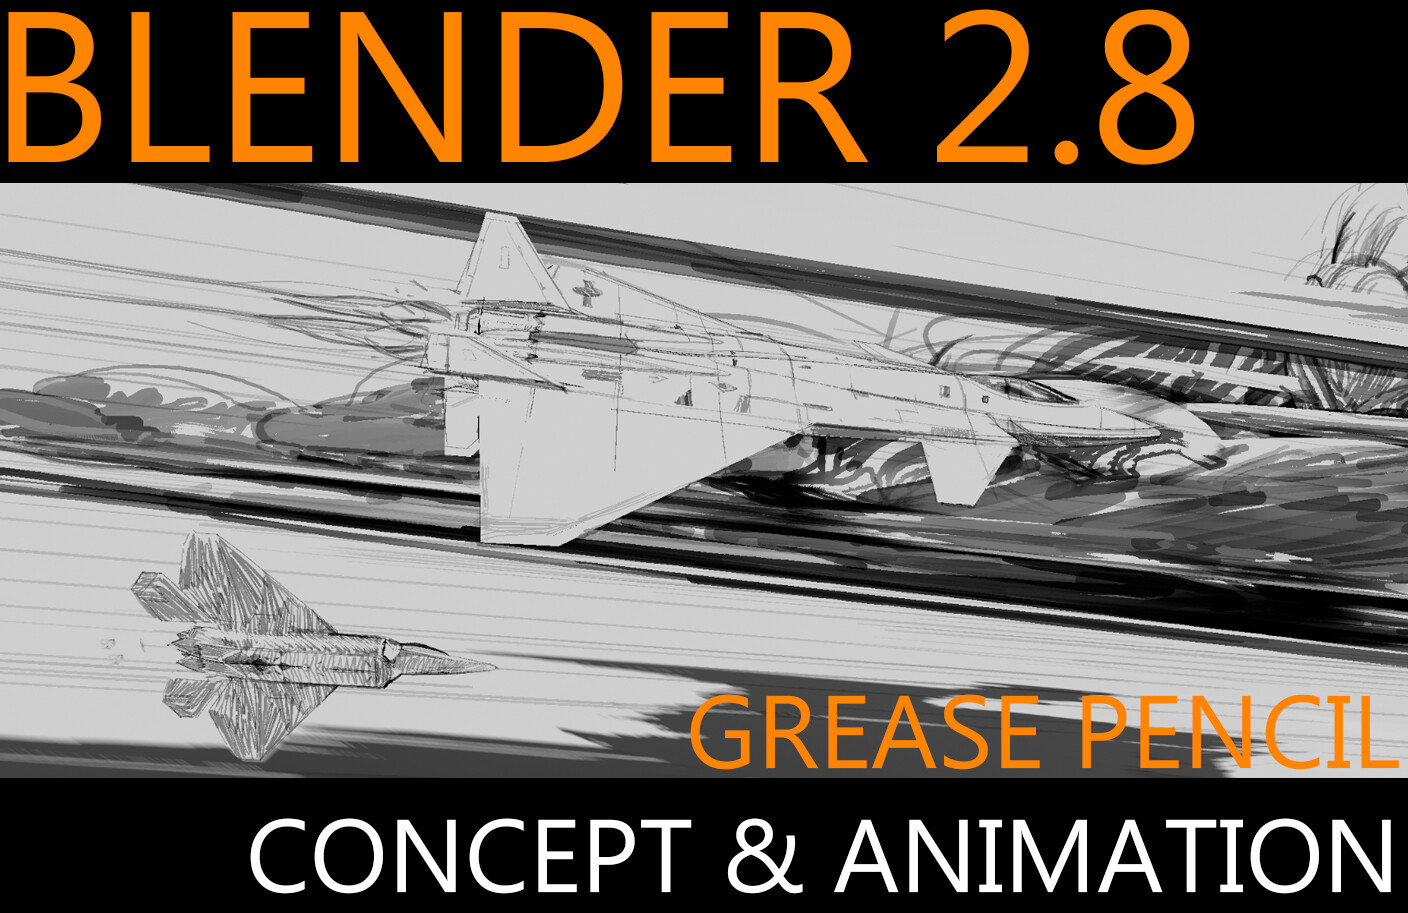 Grease Pencil: Design - Blender Market